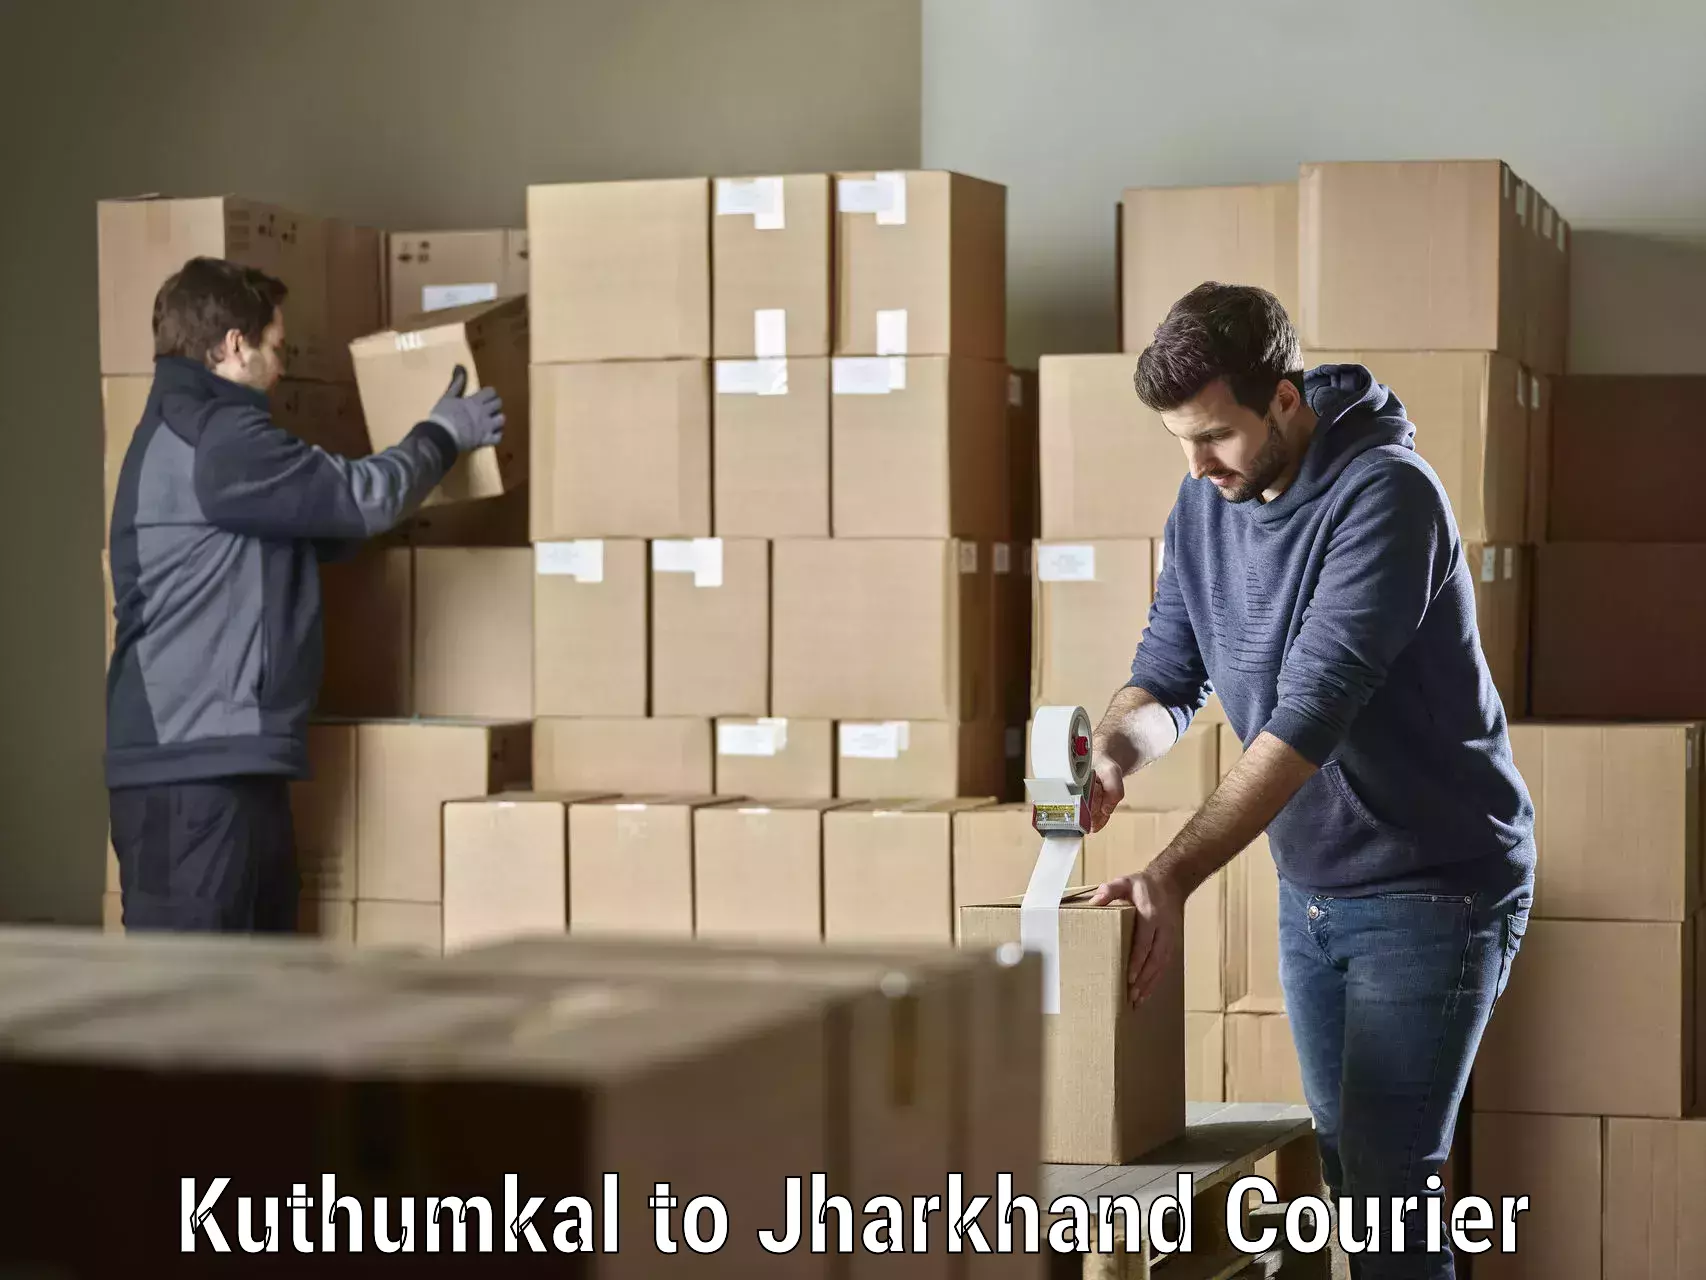 Efficient order fulfillment Kuthumkal to Chakradharpur